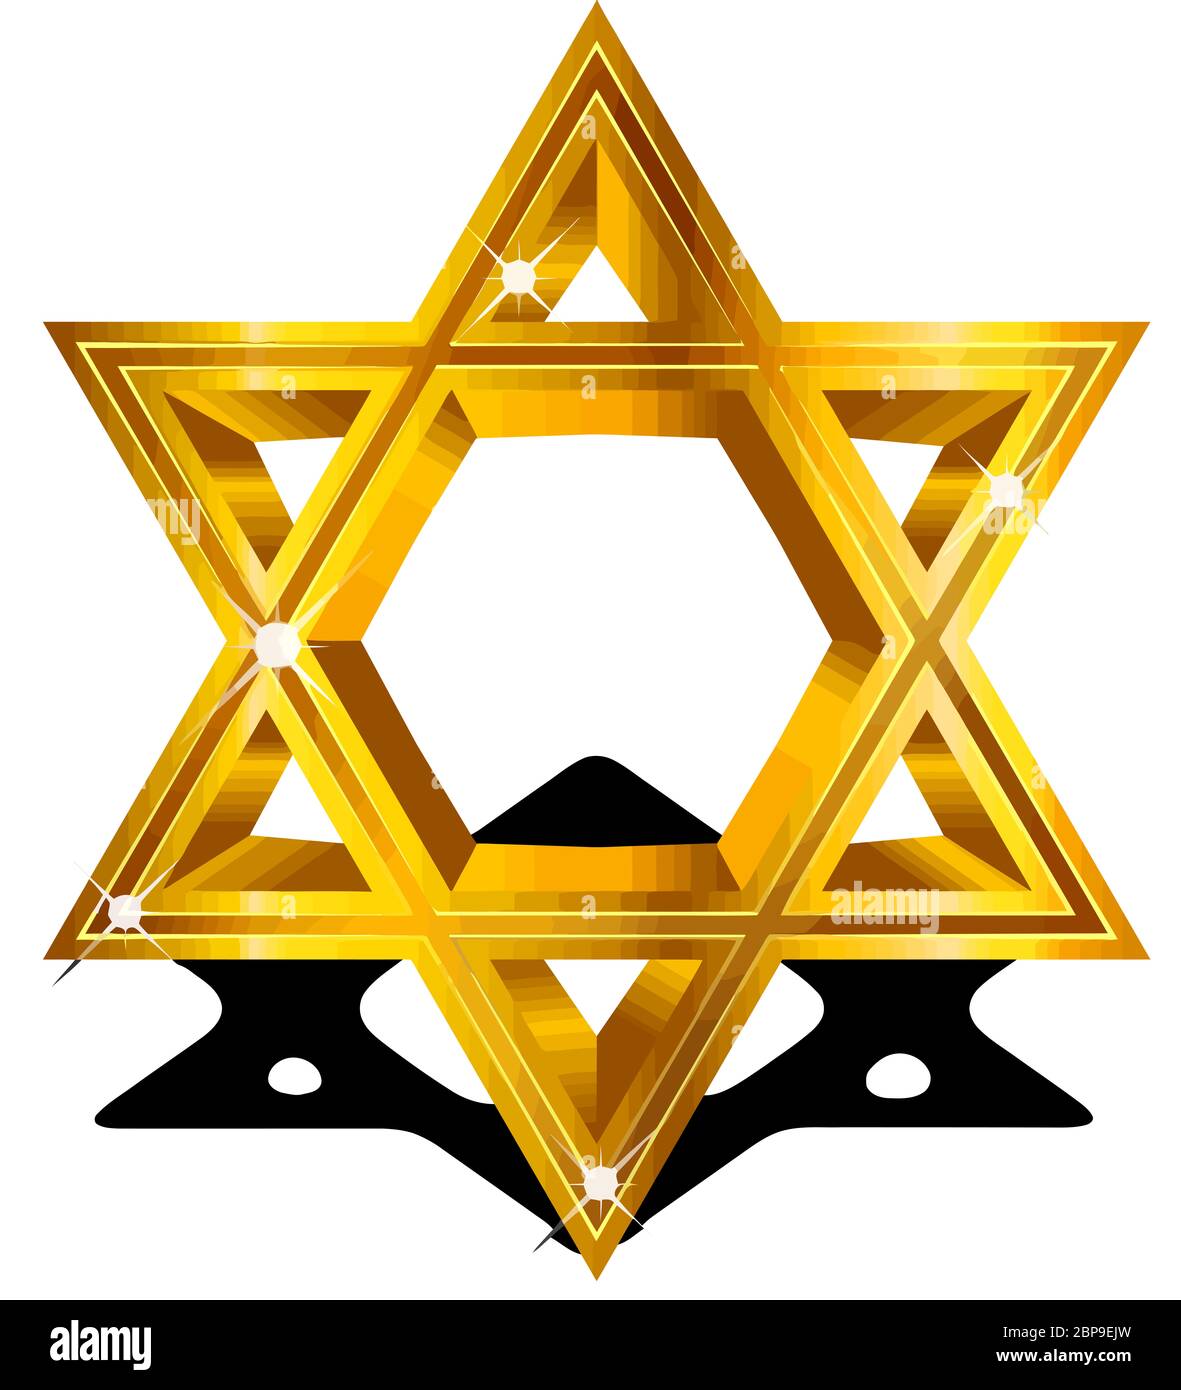 Étoile de David traditionnel le judaïsme religion juive shinny or illustration Banque D'Images